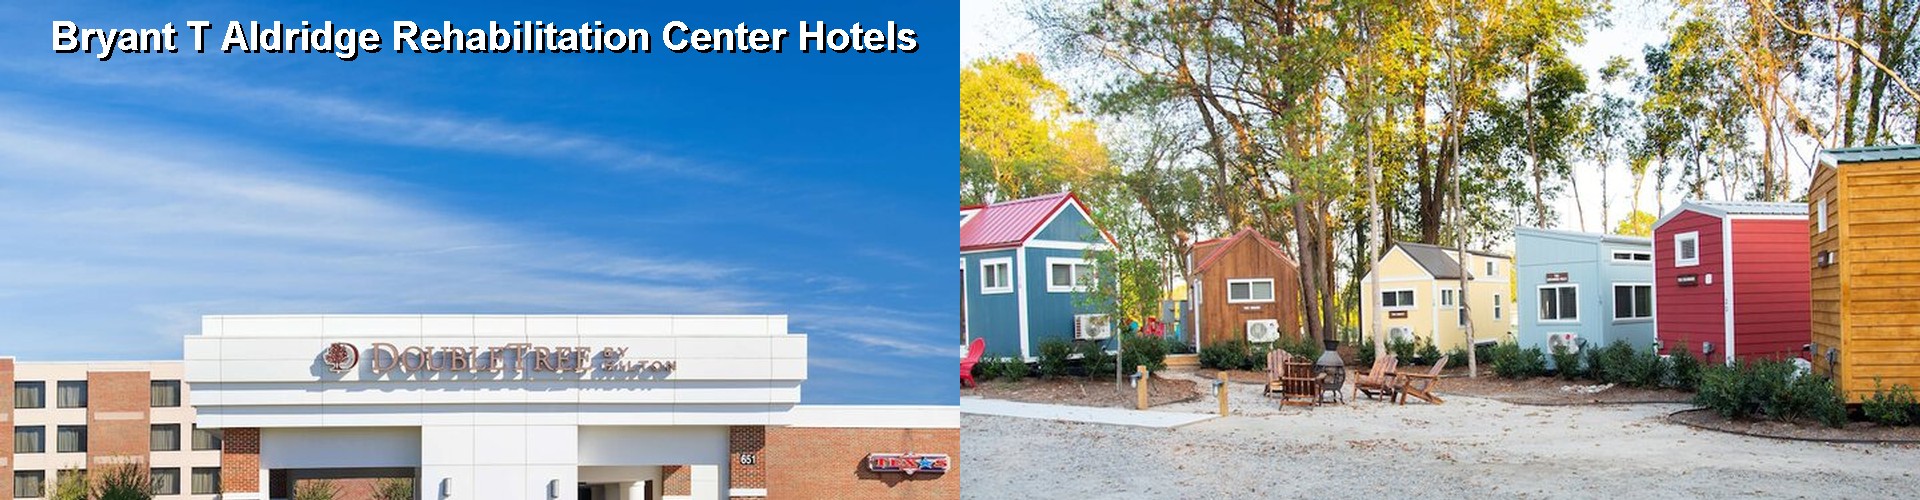 5 Best Hotels near Bryant T Aldridge Rehabilitation Center